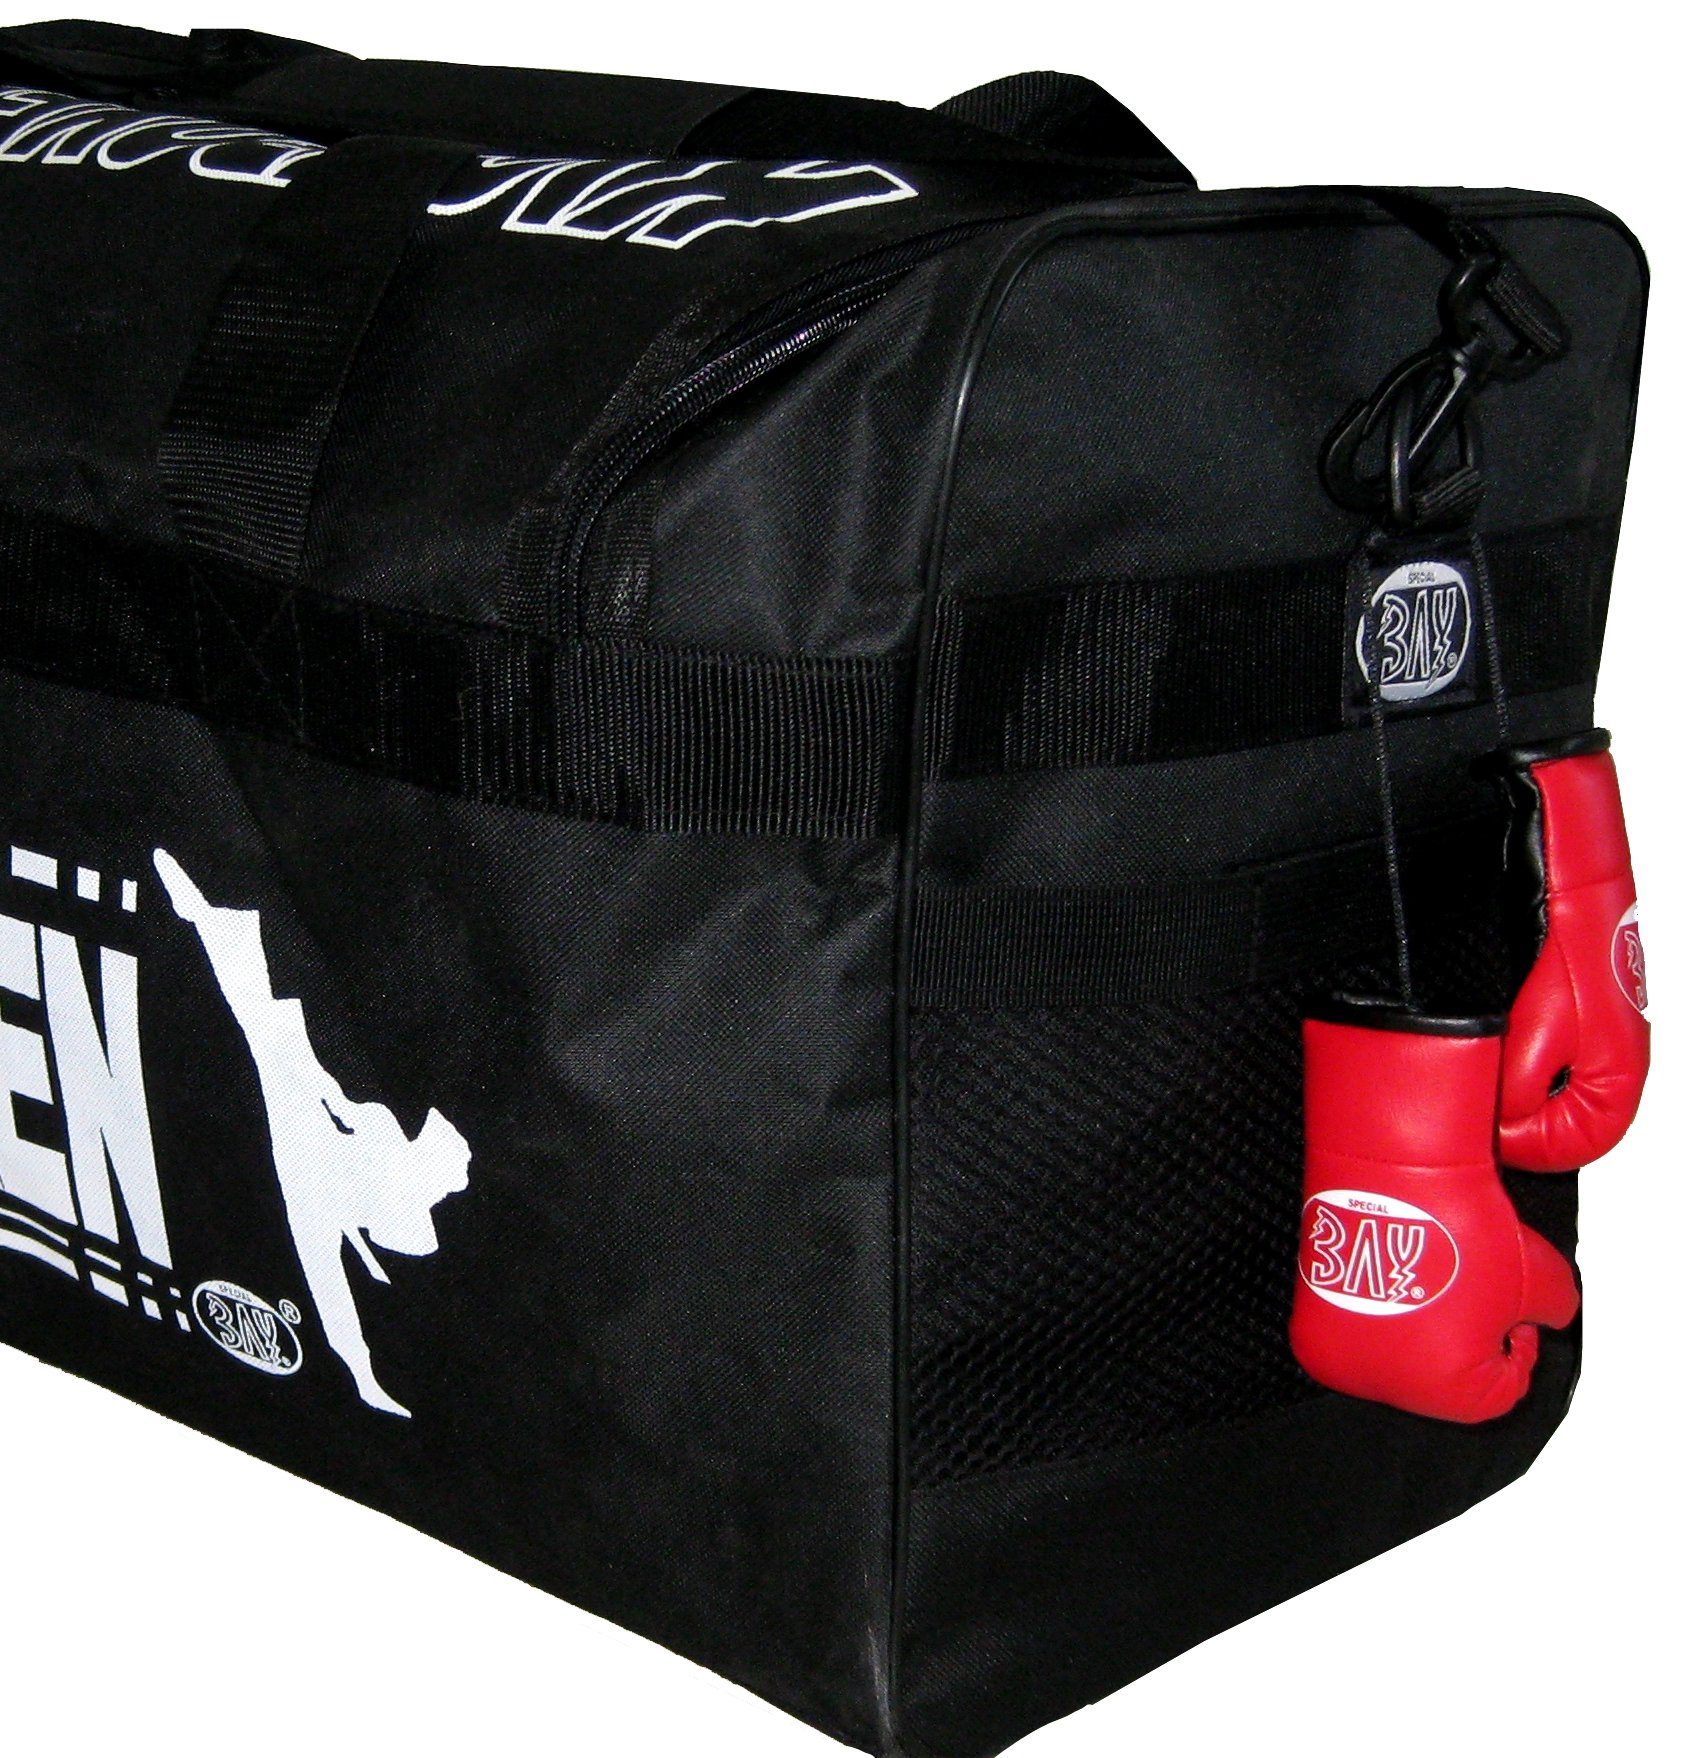 BAY-Sports Boxhandschuhe Mini Auto Anhänger Tasche, usw. Autospiegel Deko Geschenk Paar, für Box-Handschuhe Boxen